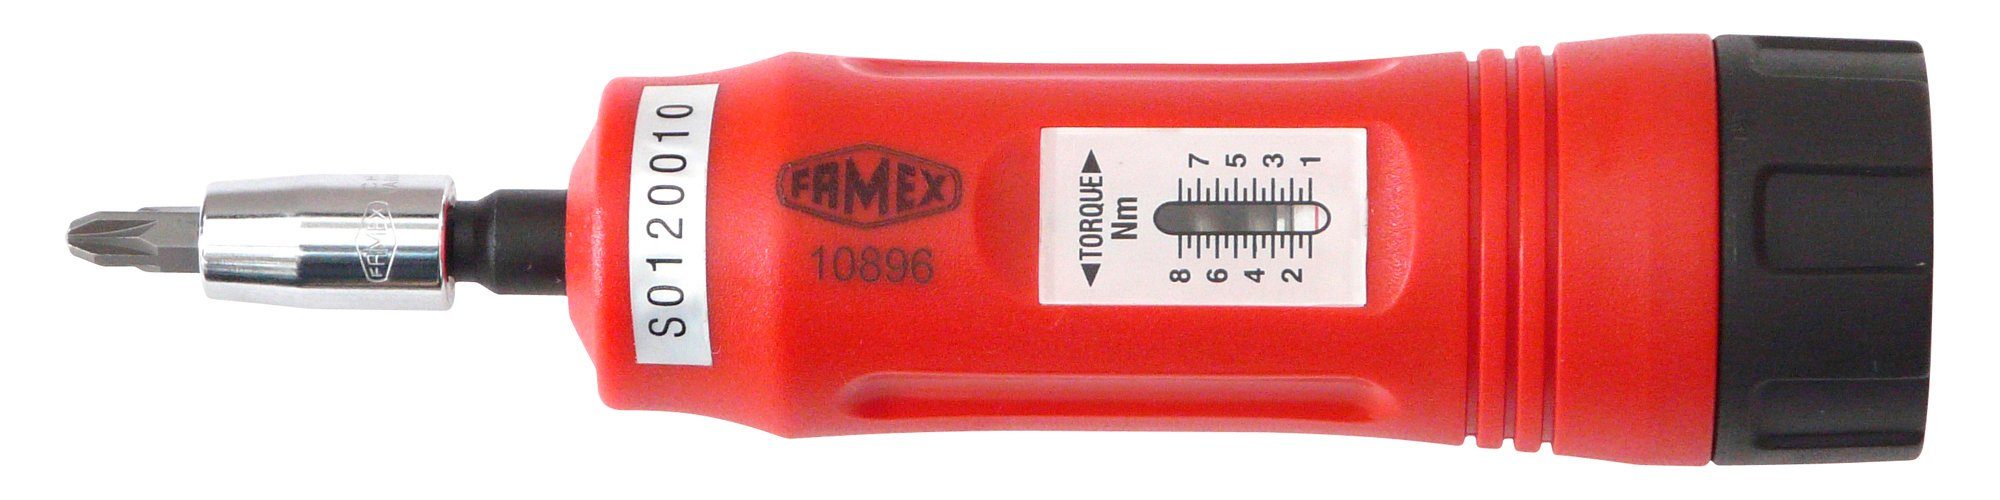 FAMEX Drehmomentschlüssel 10896, 1-8 Nm